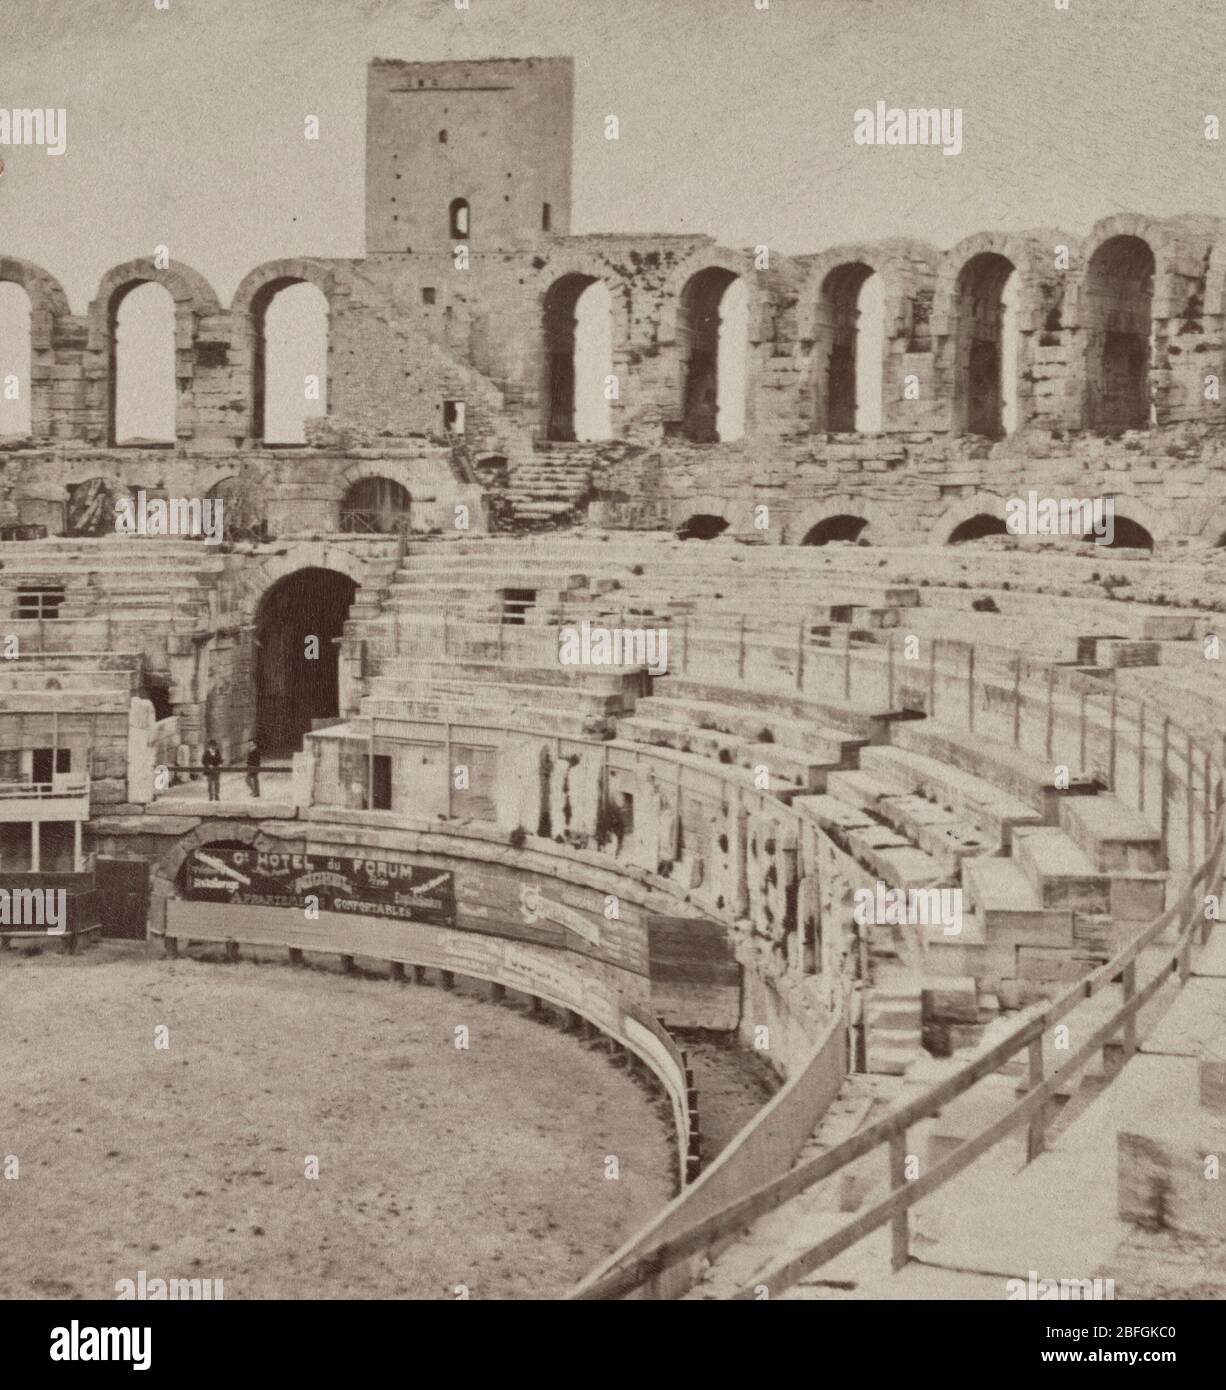 Intérieur de l'ancienne arène romaine, Arles, France, vers 1903 Banque D'Images